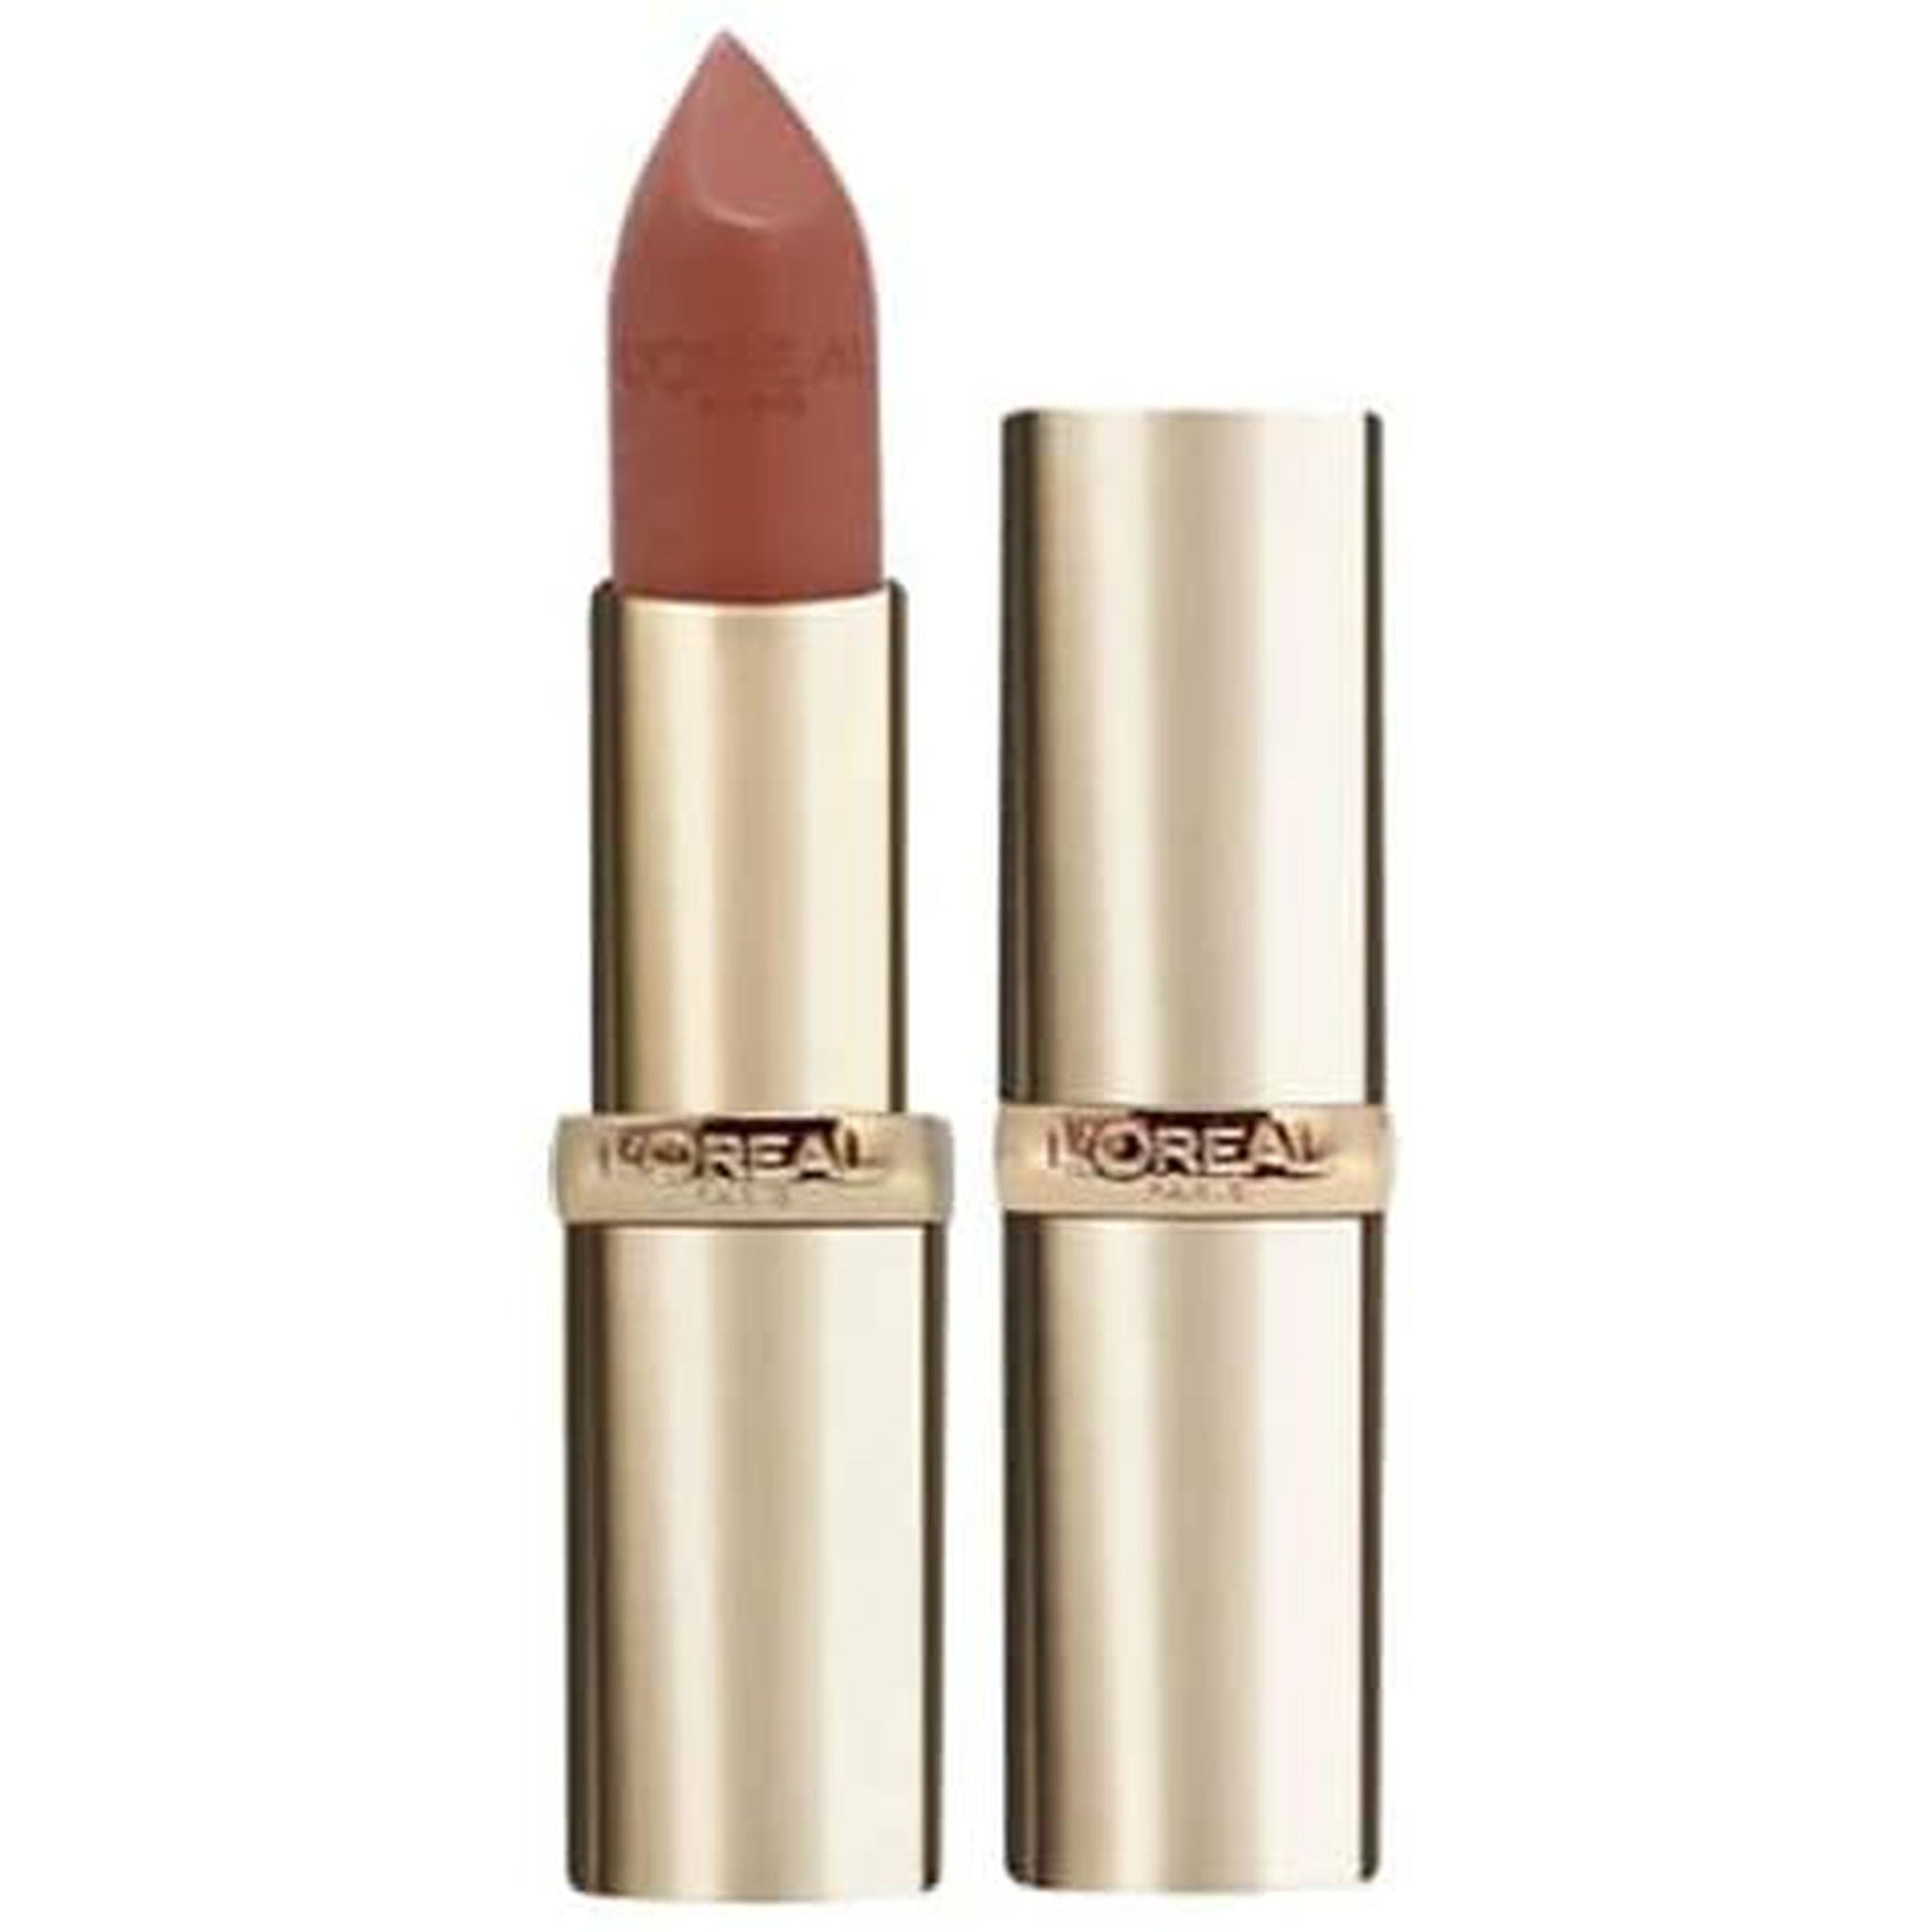 L'Oreal Paris color riche Satin lipstick - 630 Beige A Nu-L'Oreal-BeautyNmakeup.co.uk